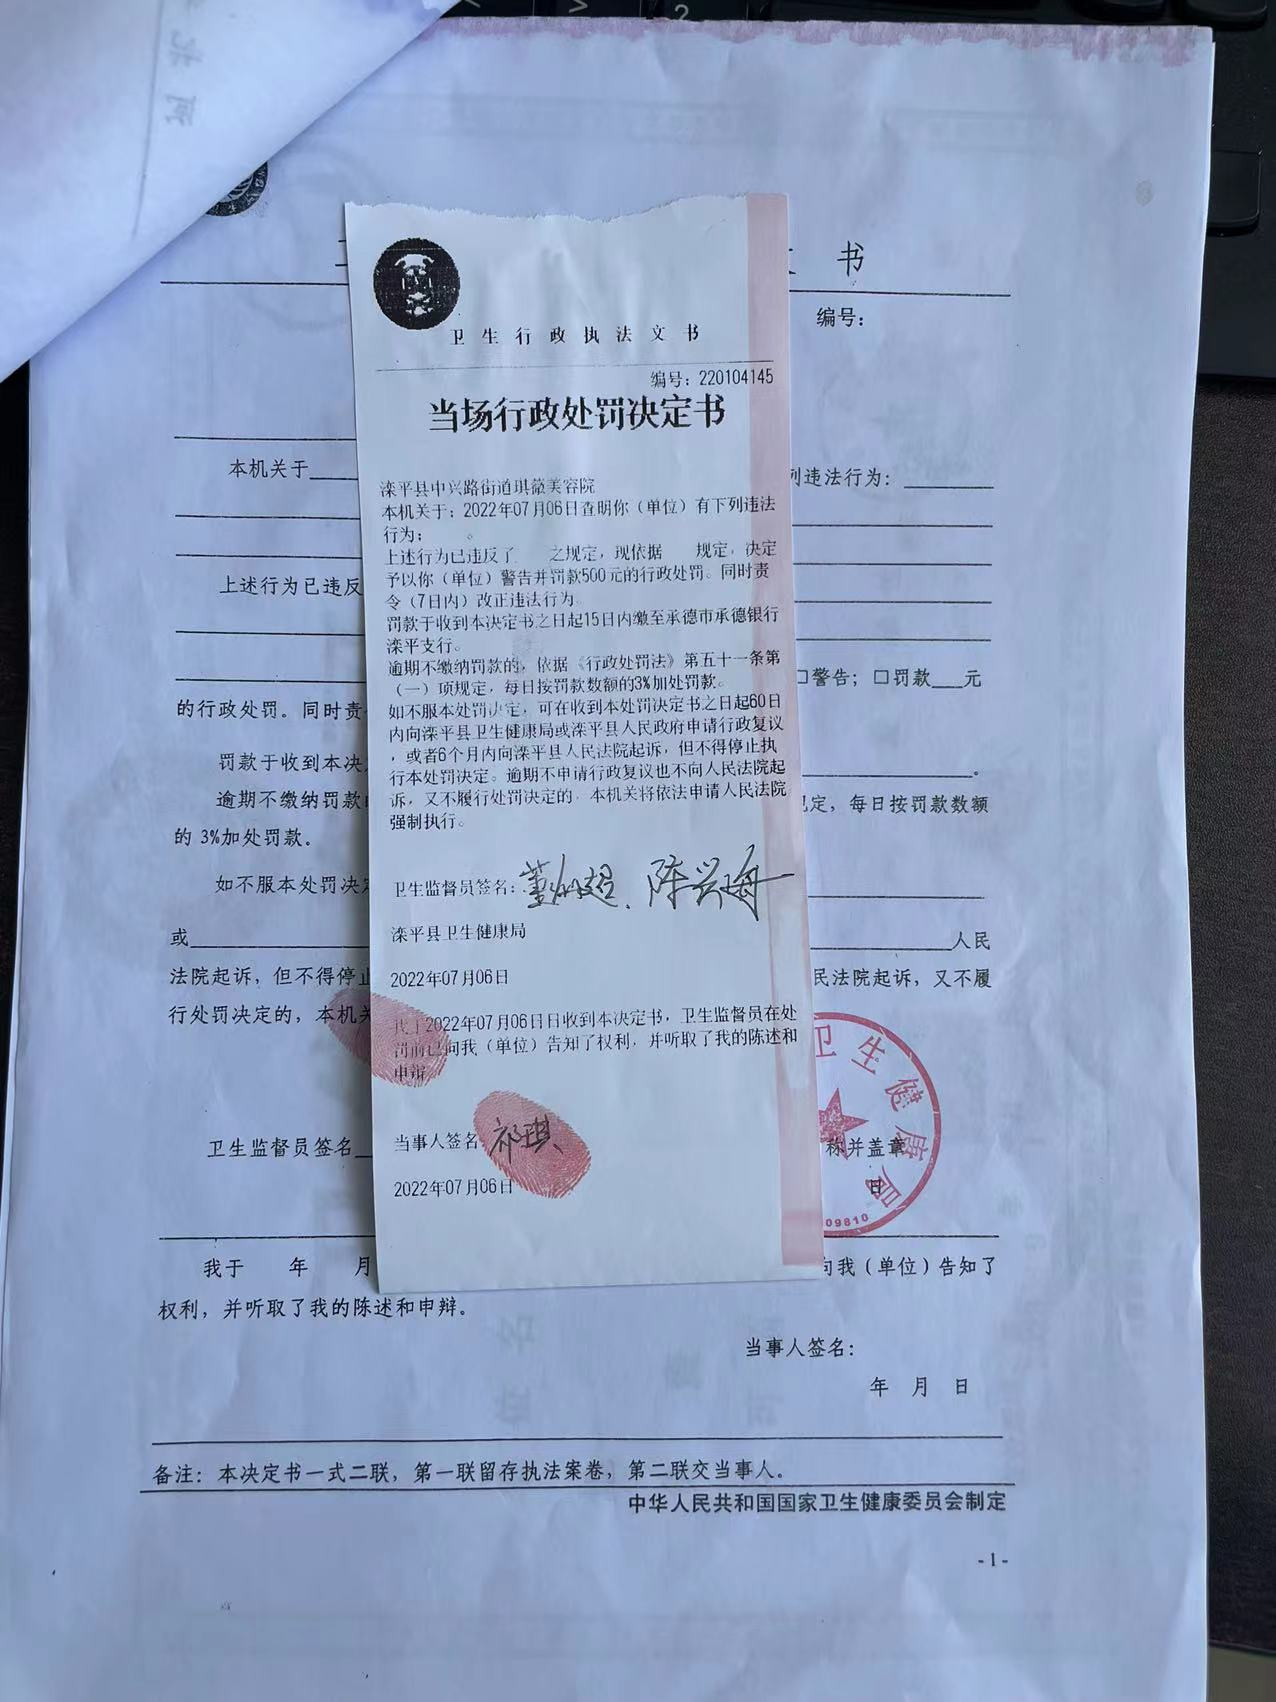 滦平县卫生健康局关于220104145处罚决定的公示.jpg